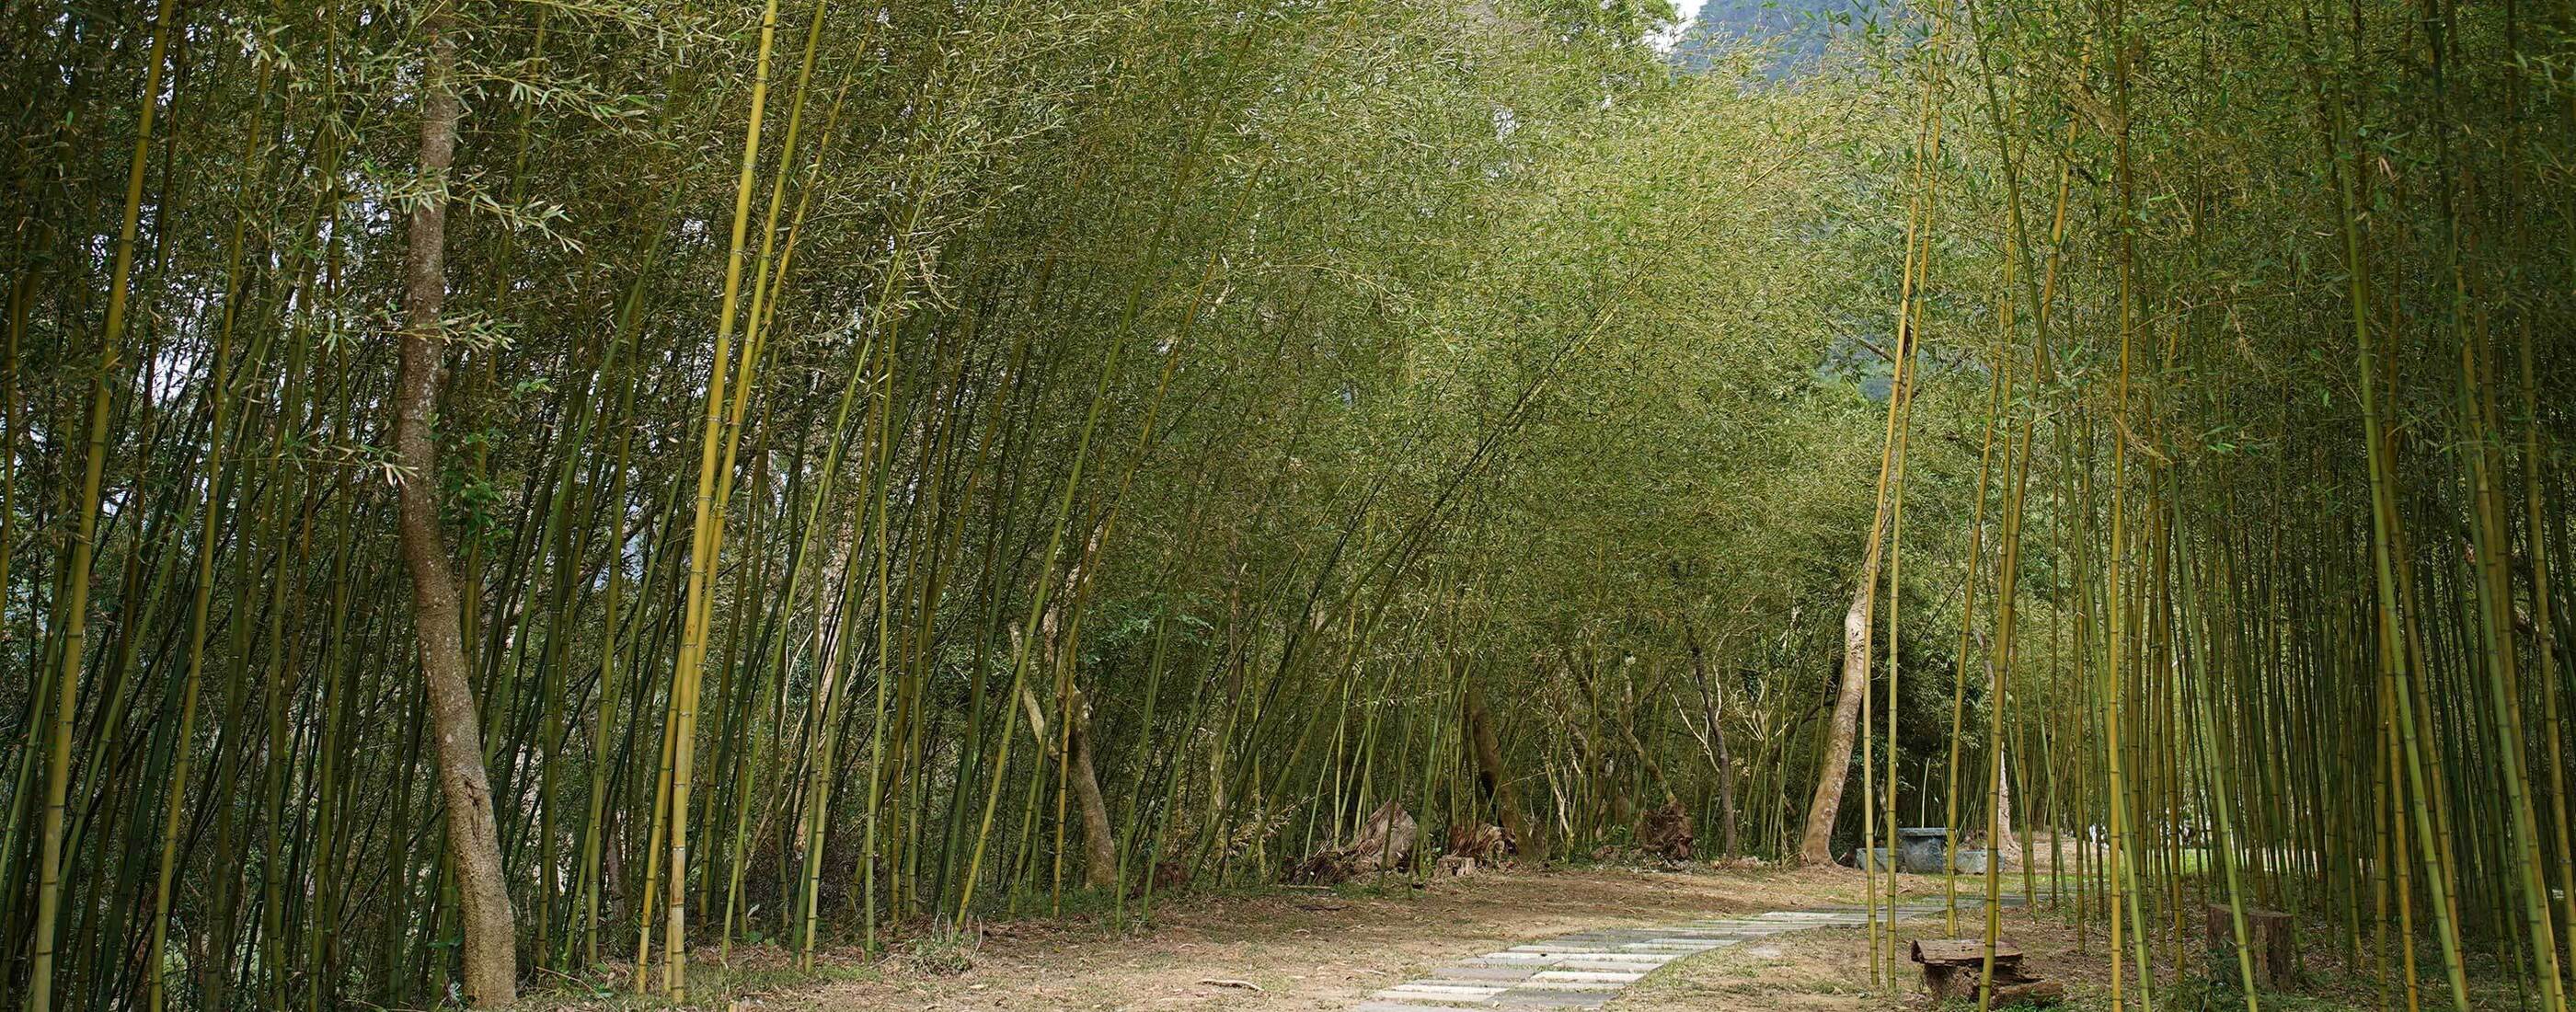 竹博覽會花蓮展區《竹間天地》正式開幕！貫徹里山的永續精神